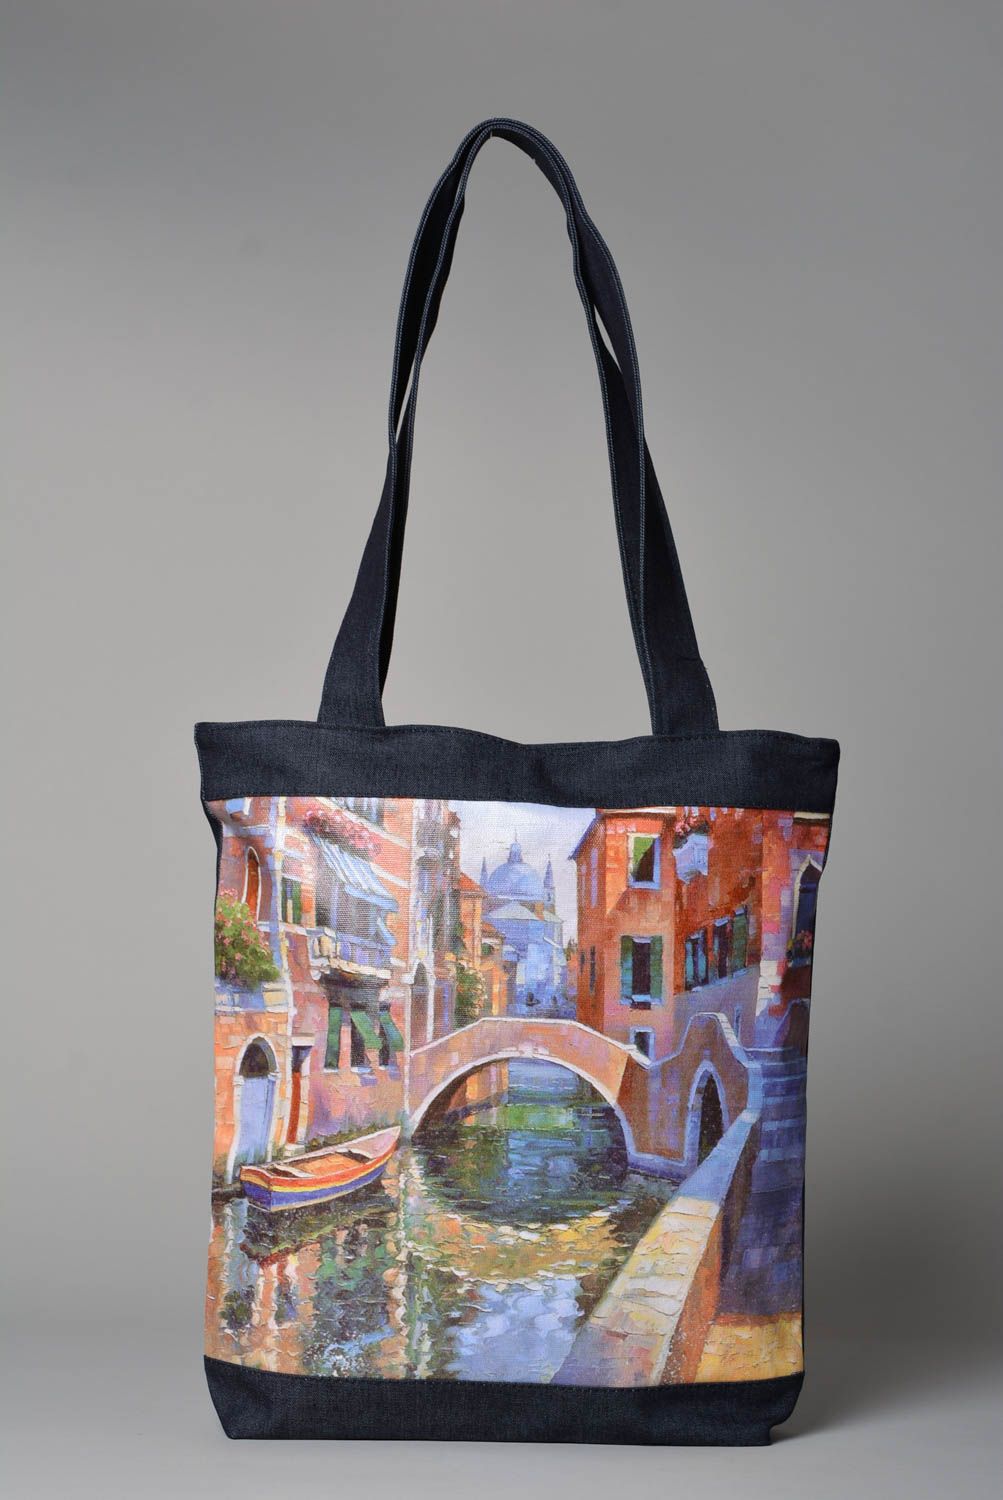 Сумка ручной работы оригинальная женская сумка яркая тканевая сумка Венеция фото 1